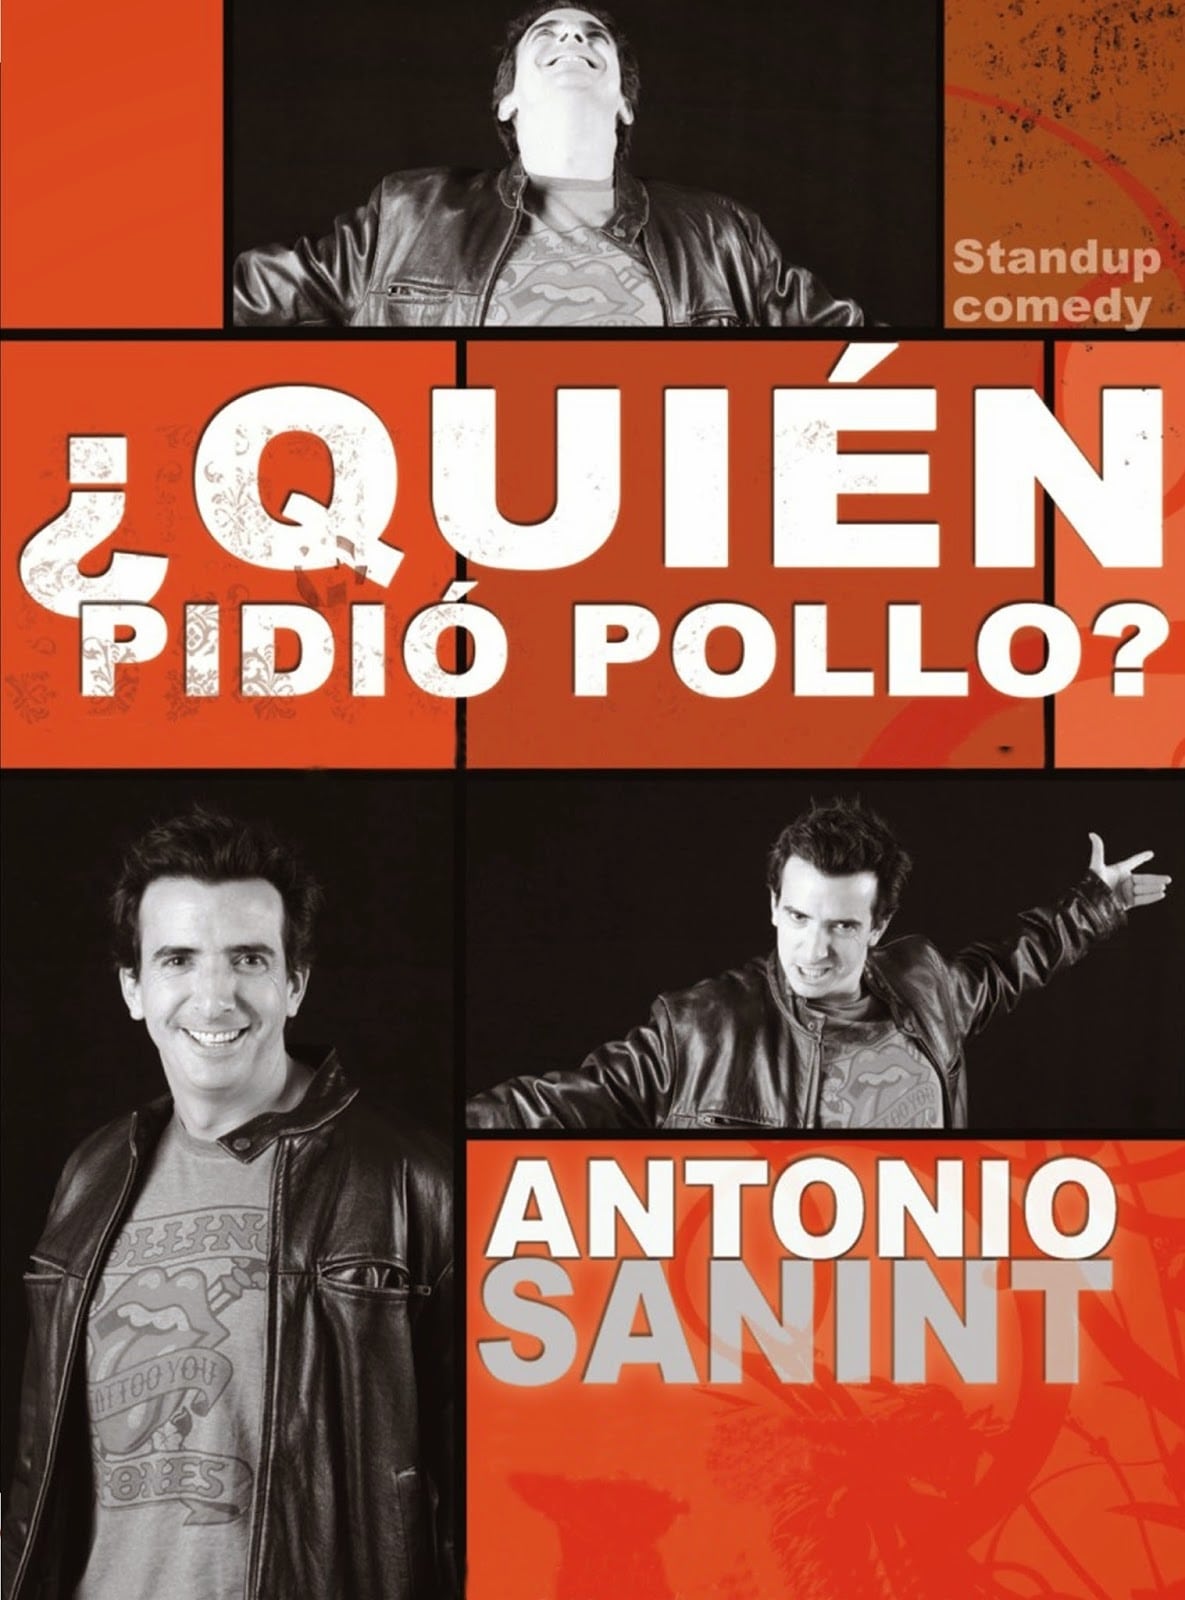 Antonio Sanint: Quién pidió pollo?